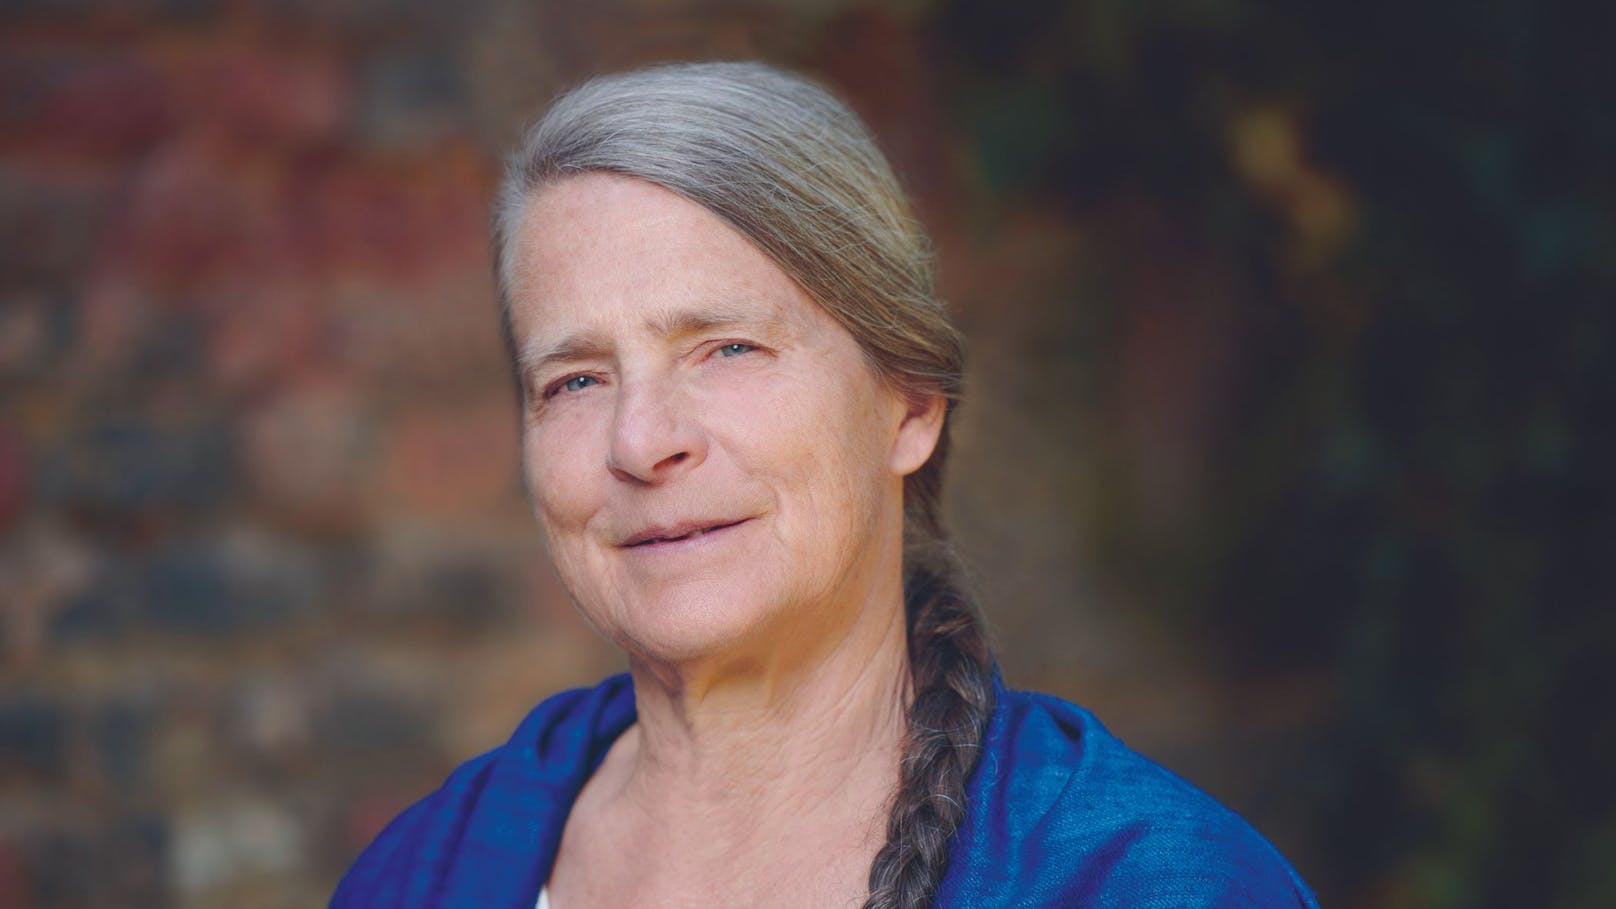 Die Pionierin der Klimaforschung, Helga Kromp-Kolb, spricht im großen <em>"Heute"</em>-Interview über Systemwandel, Klimaangst und Aktivismus.